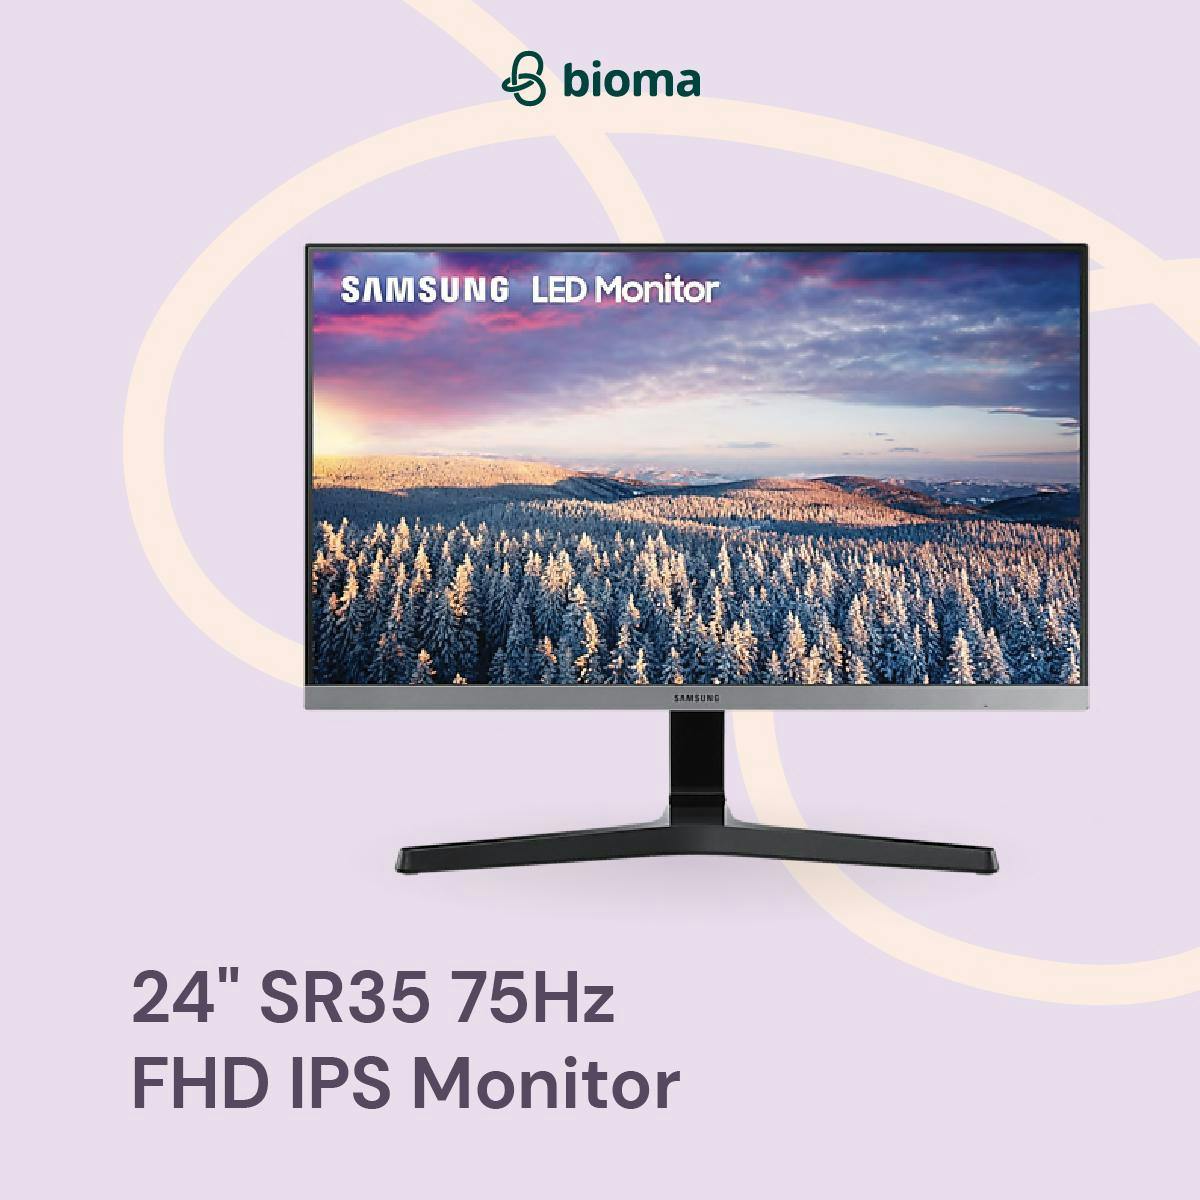 24" SR35 75Hz FHD IPS Monitor